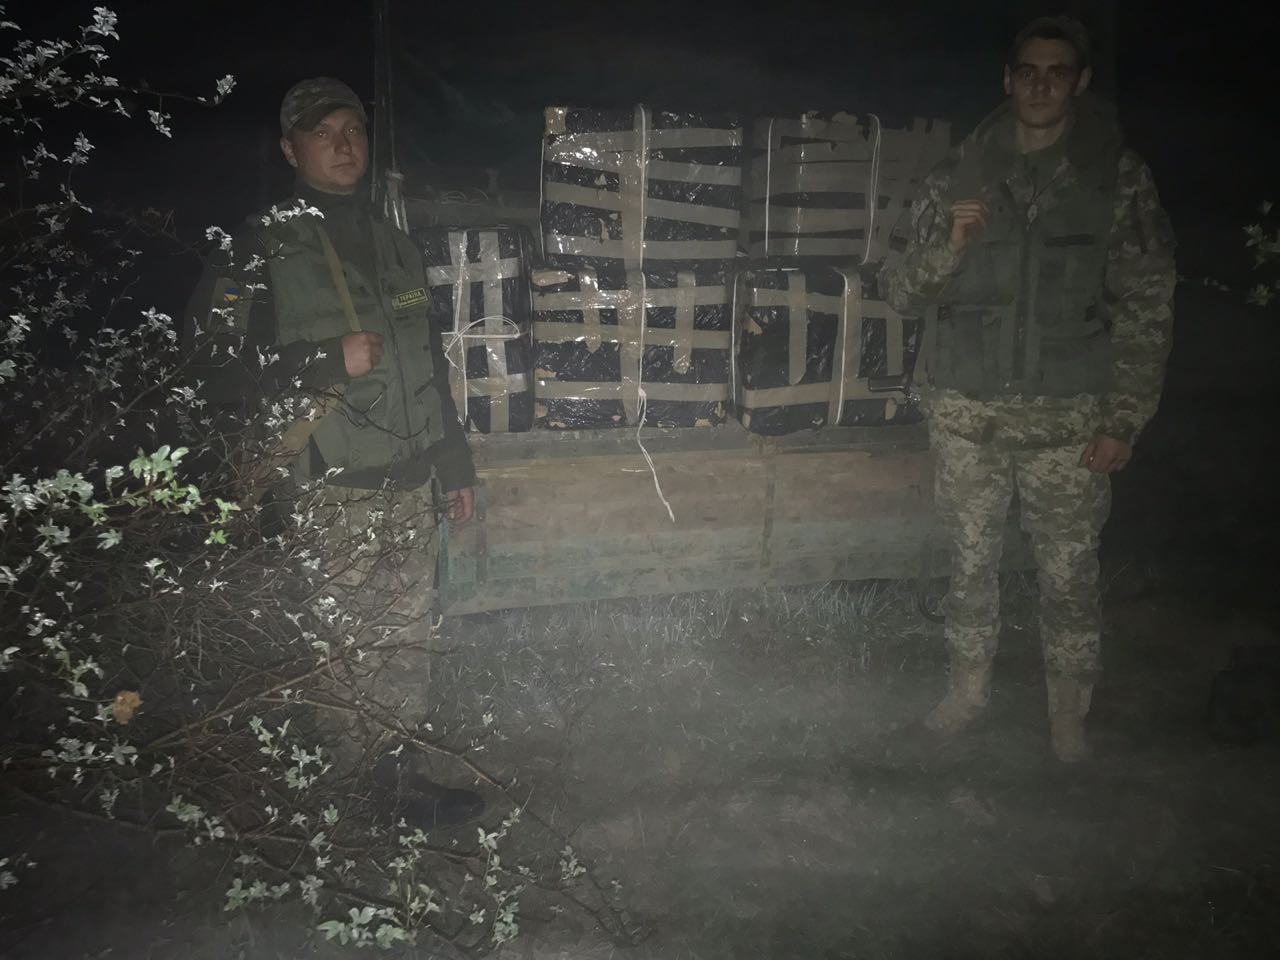 Сьогодні вночі поблизу українсько-угорського кордону прикордонники відділу «Горонглаб» Мукачівського загону припинили спробу незаконного переміщення сигарет.